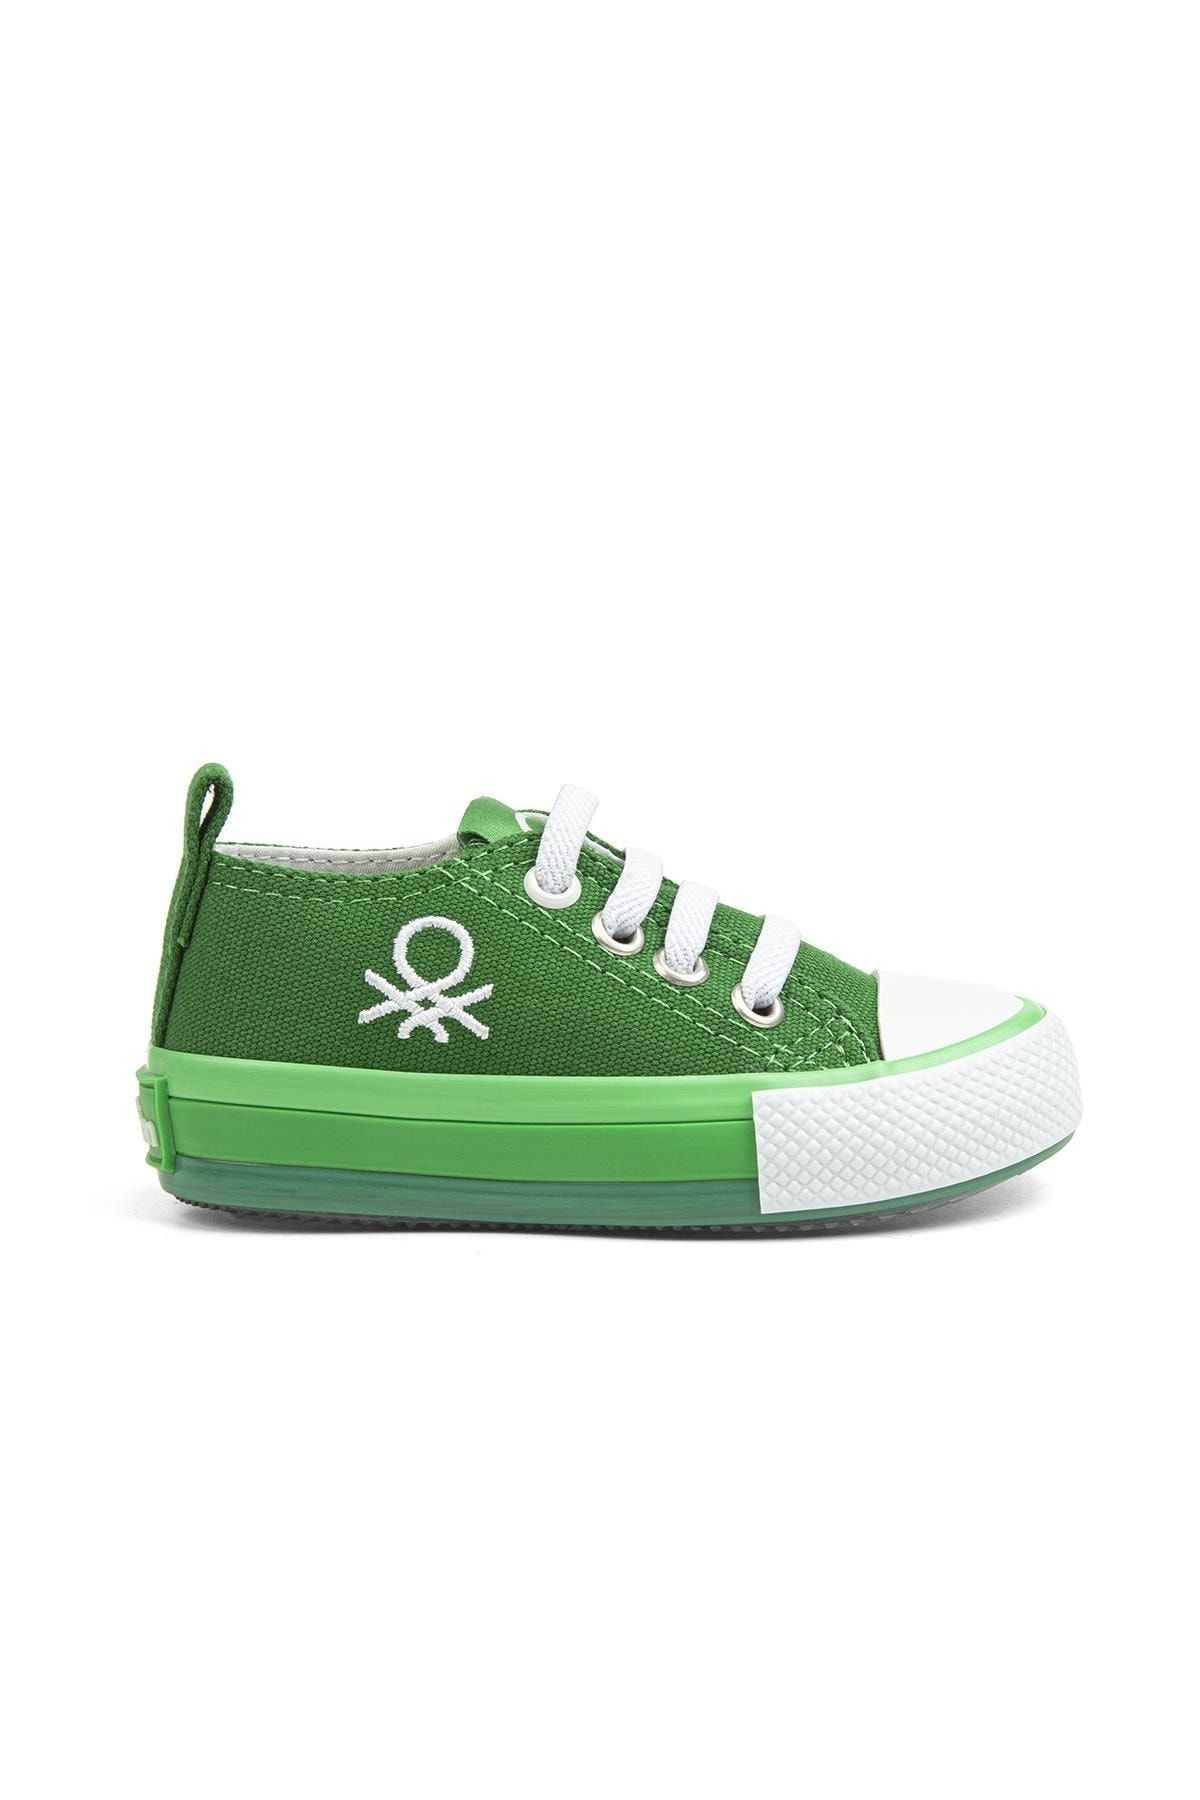 Benetton ® | Bn-30652 - 3394 Yesil - Çocuk Spor Ayakkabı